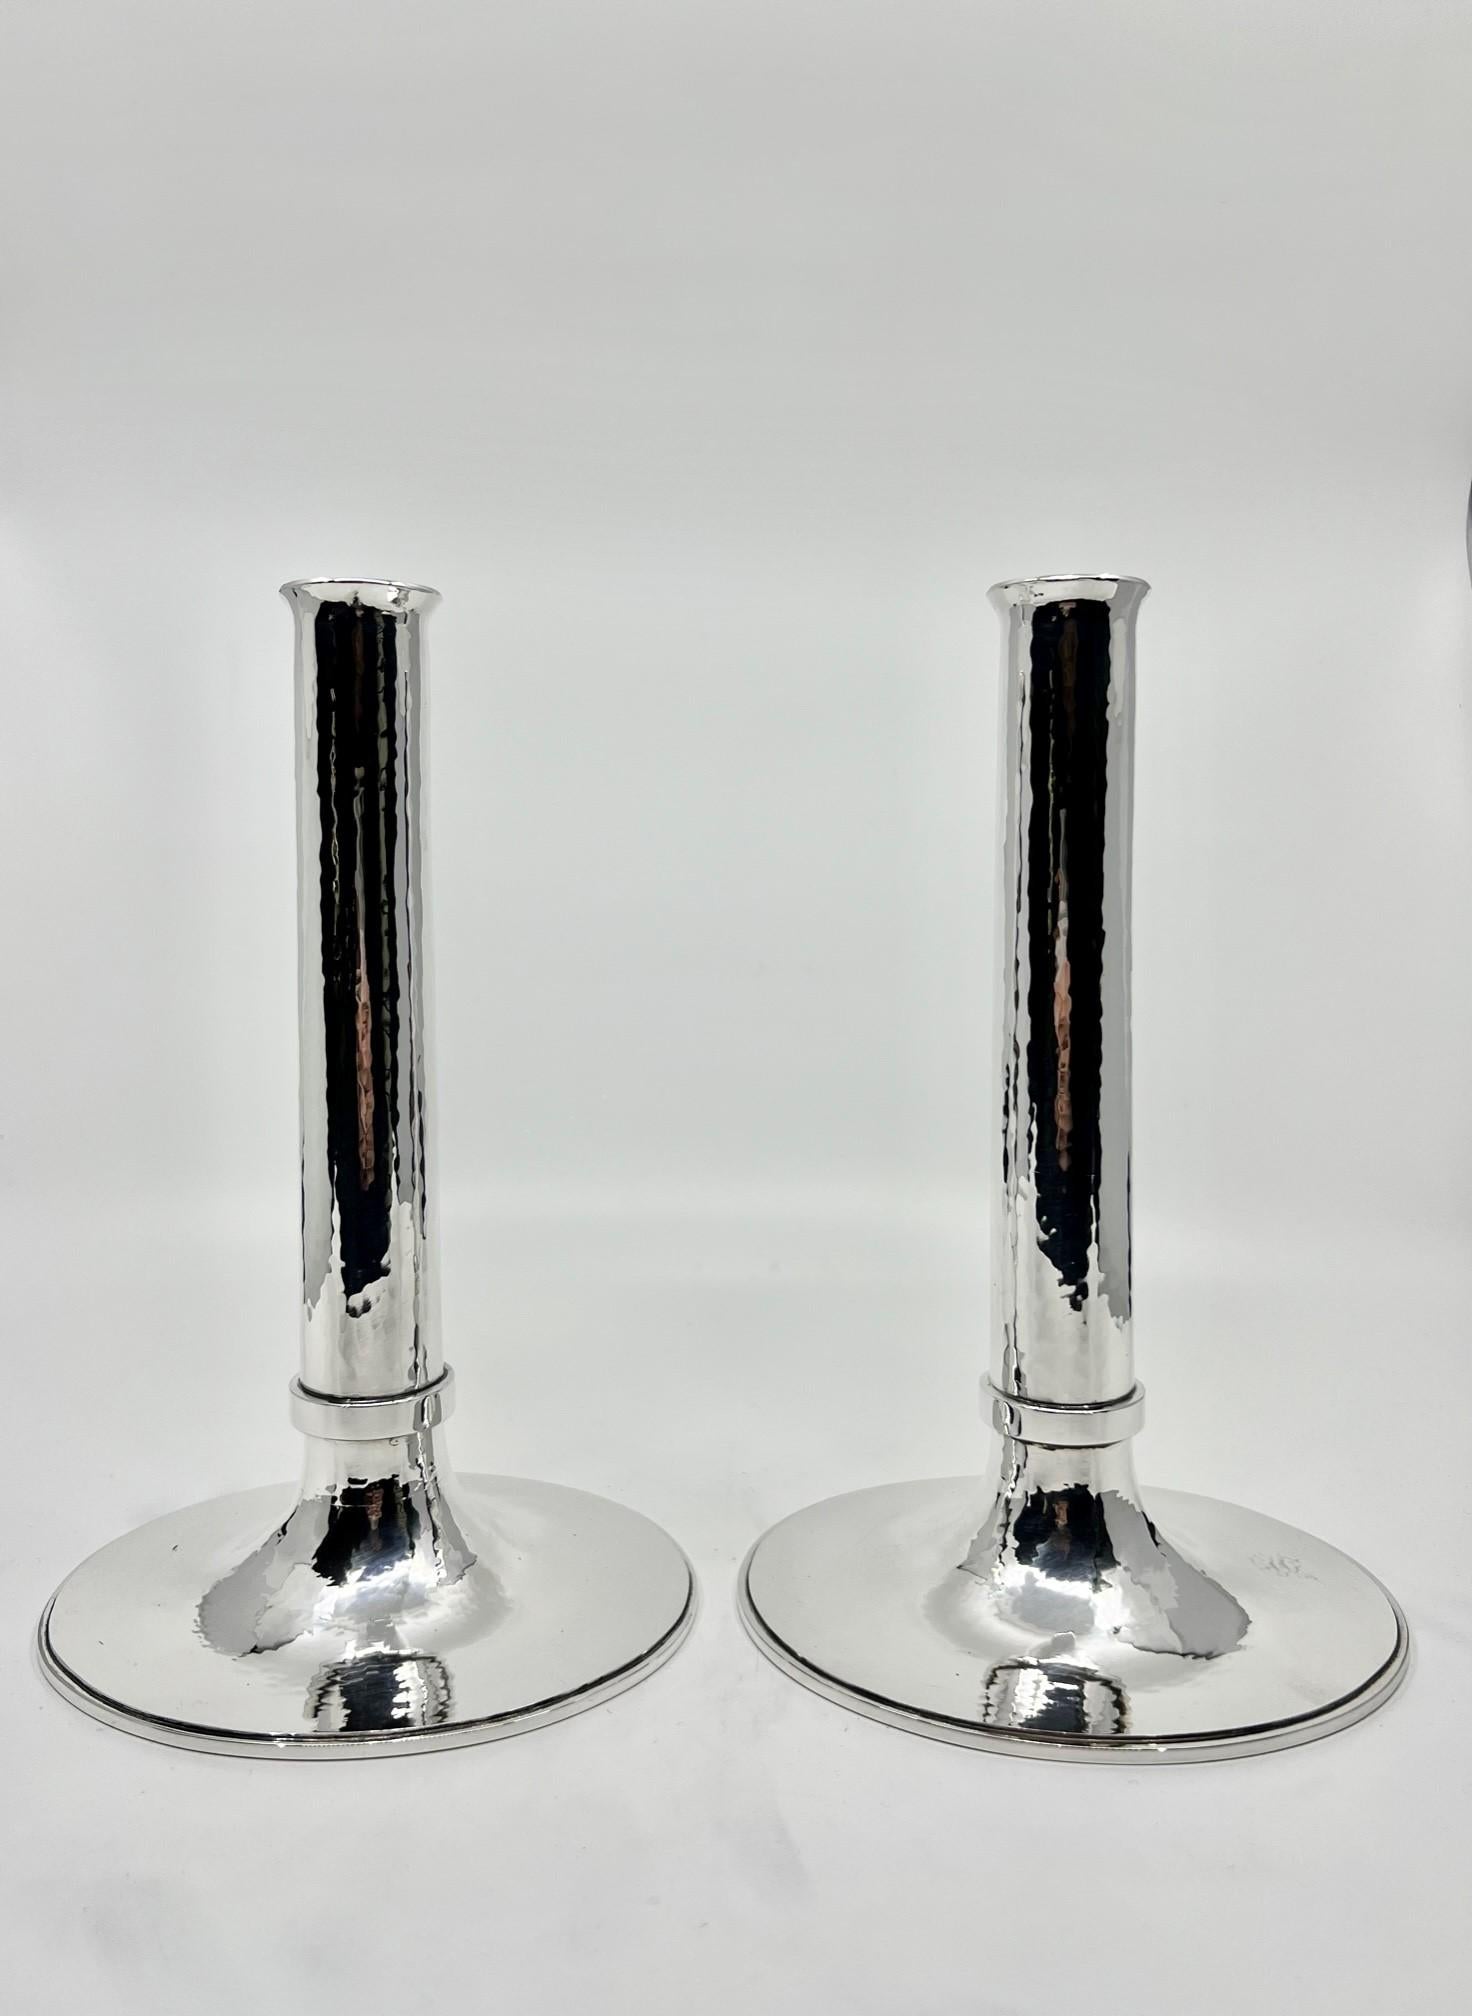 Ein Paar neuer handgefertigter Kerzenhalter aus Sterlingsilber, entworfen und hergestellt von Greg Pepin Silver und dem zeitgenössischen Kopenhagener Silberschmied Manuel Sjodahl Andersen. Im Gegensatz zu gefüllten Kerzenhaltern sind diese hohl und